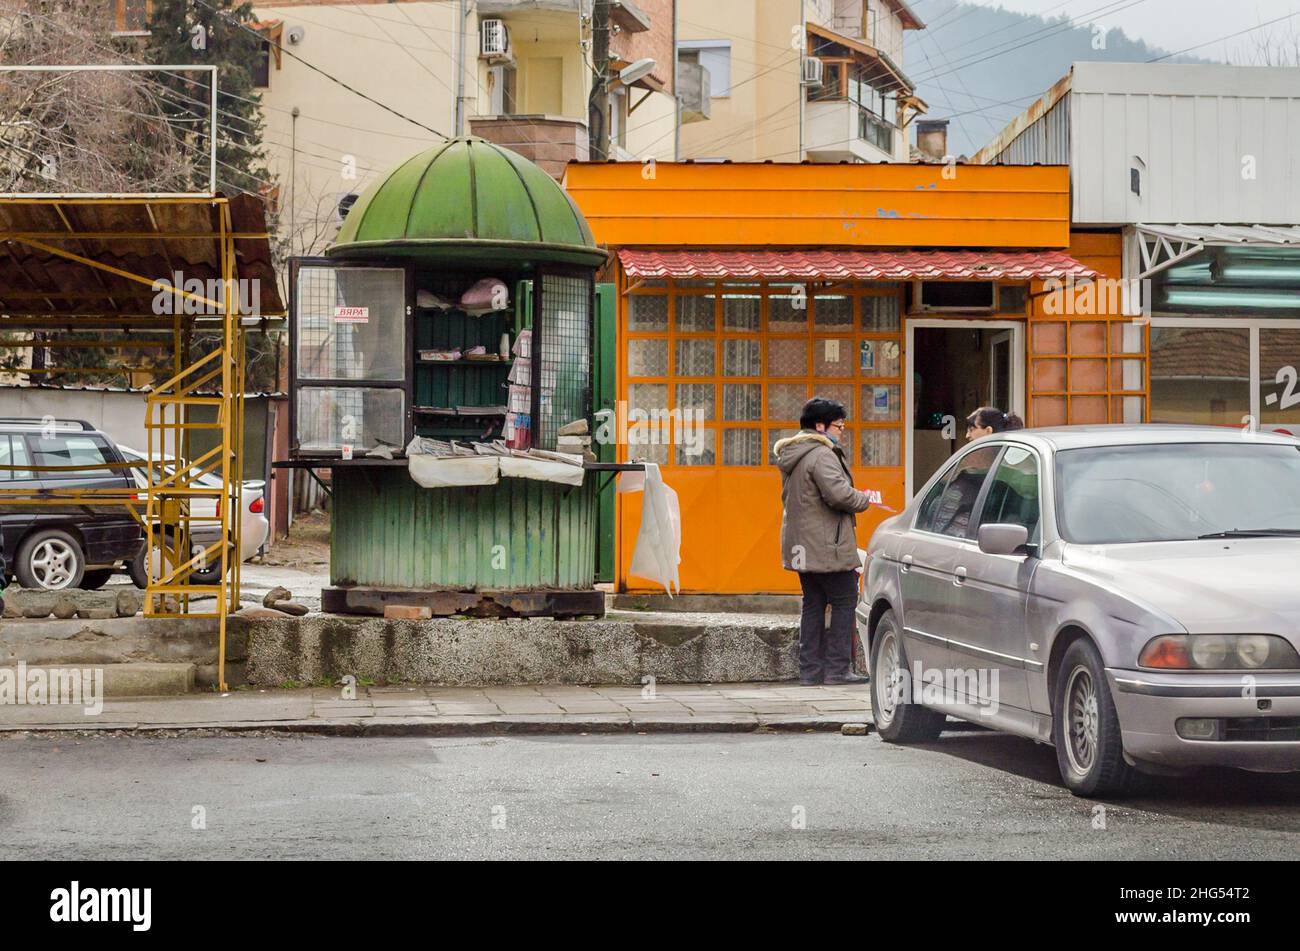 Vita quotidiana in Sud Bulgaria. Negozi vecchi e vecchi e due persone che parlano tra loro. Un'auto è parcheggiata all'esterno dei negozi. Paesi della Bulgaria meridionale Foto Stock